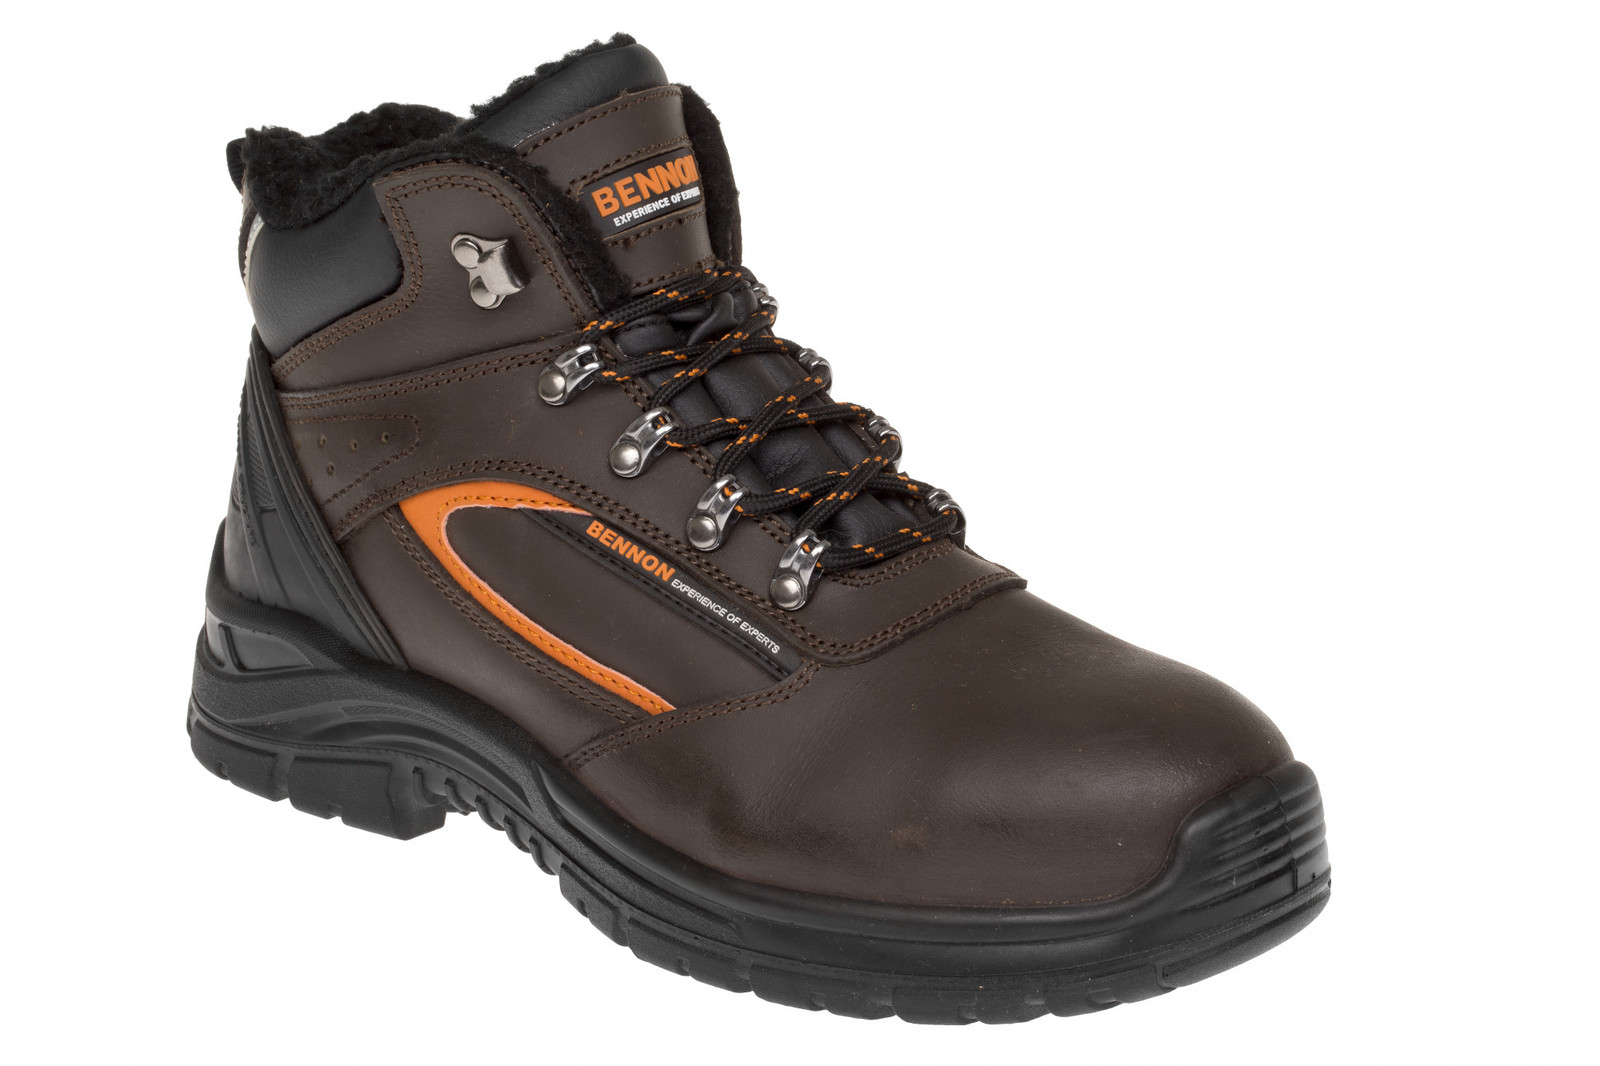 Zimná bezpečnostná obuv Bennon Farmis S3 Winter - veľkosť: 37, farba: hnedá